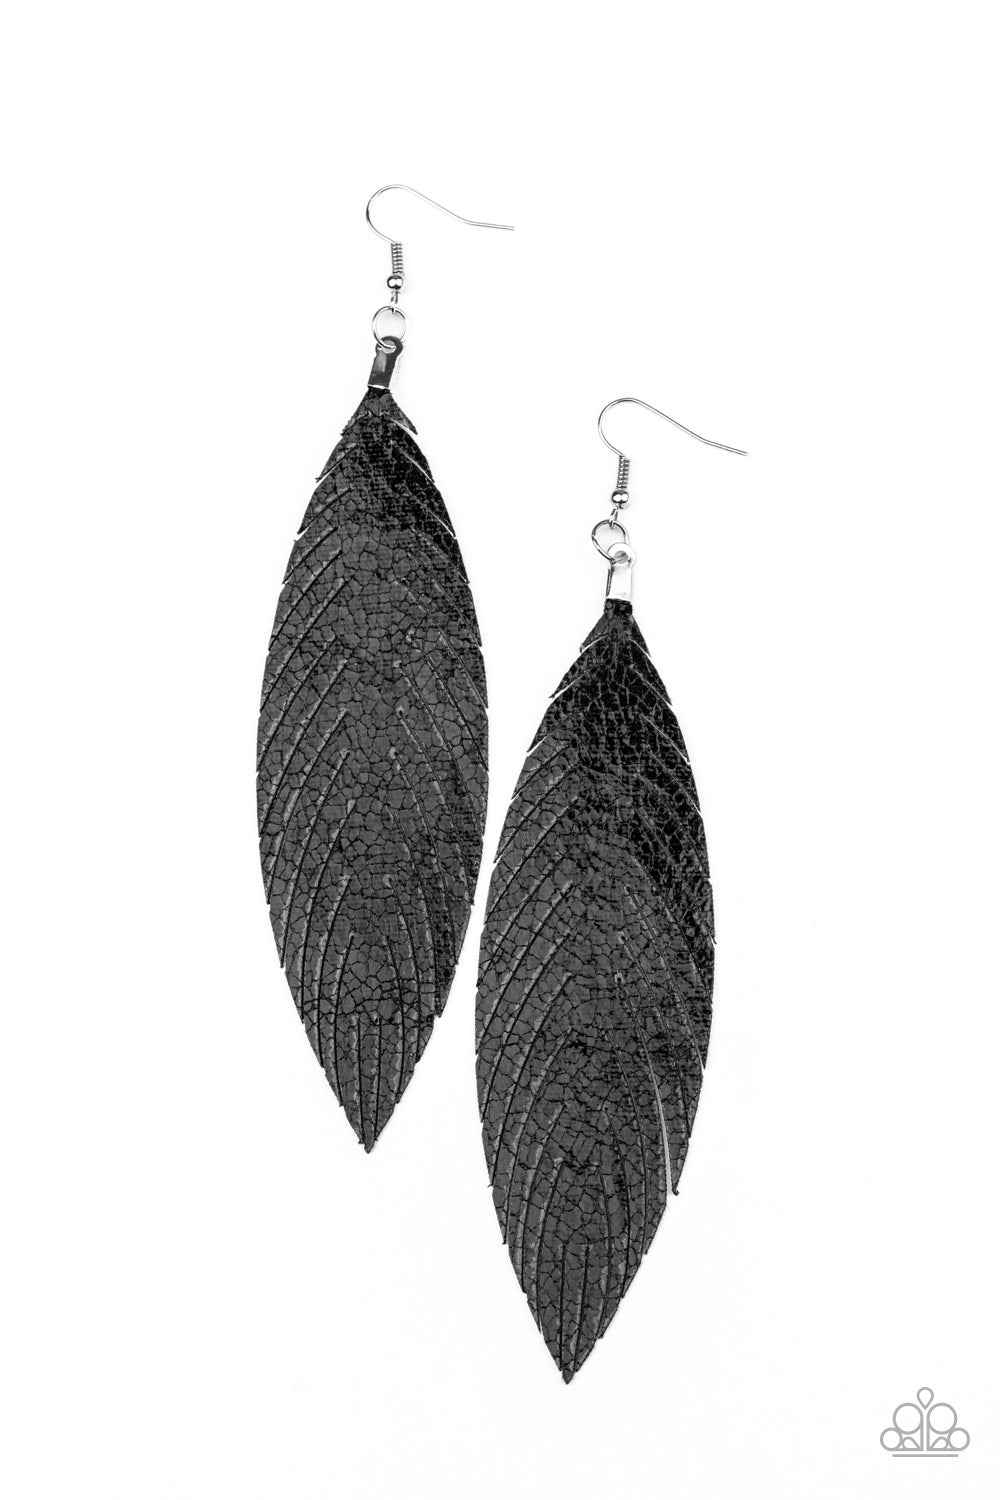 Feather Fantasy Black
Earrings - Daria's Blings N Things